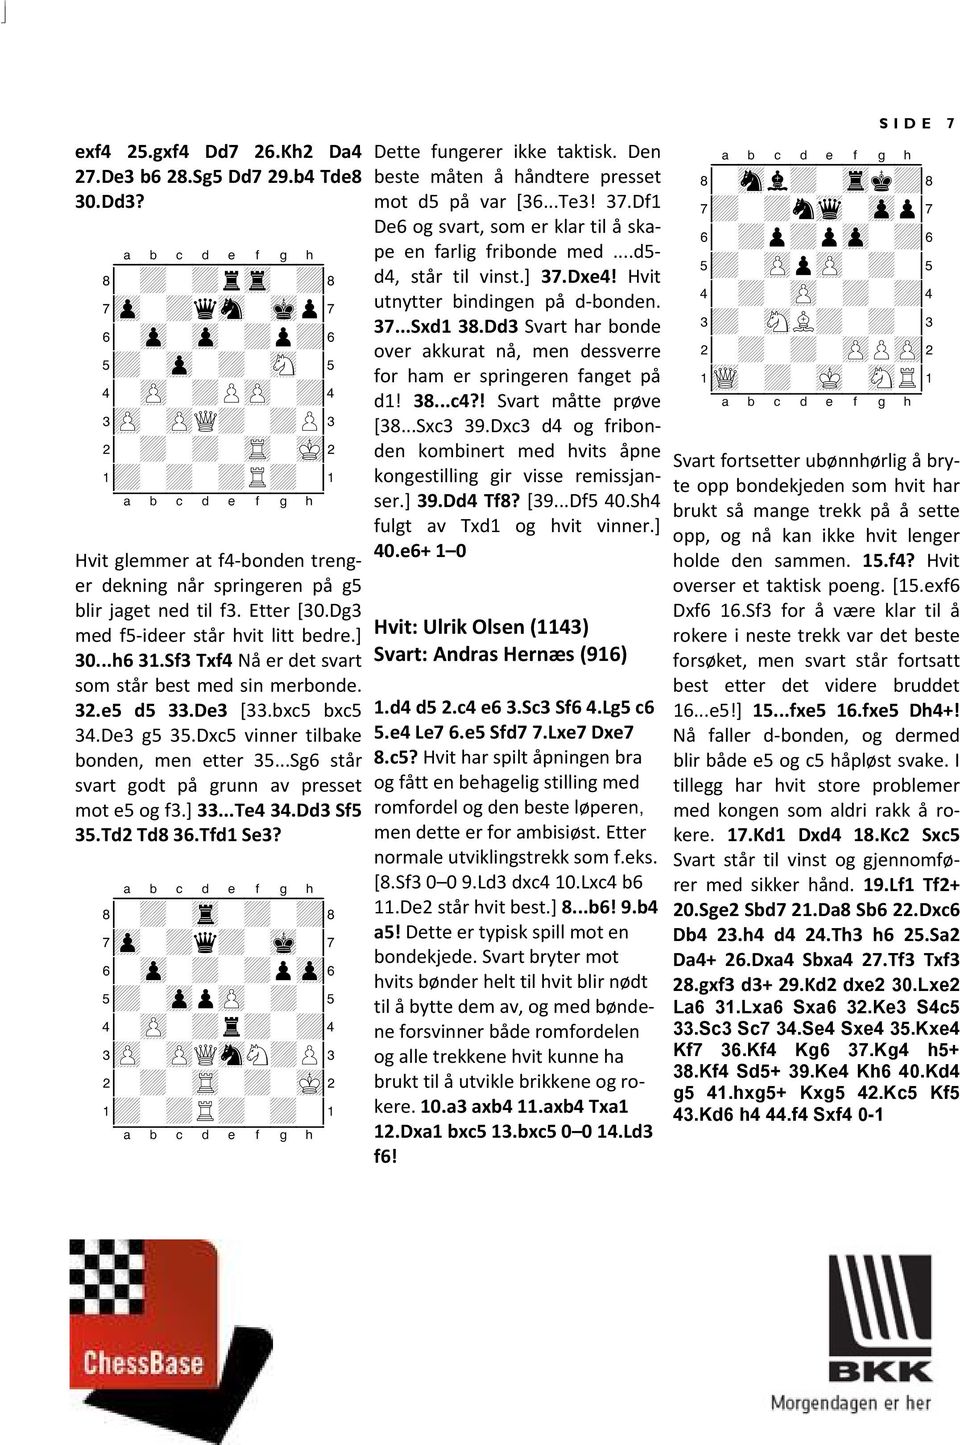 Sf3 Txf4 Nå er det svart som står best med sin merbonde. 32.e5 d5 33.De3 [33.bxc5 bxc5 34.De3 g5 35.Dxc5 vinner tilbake bonden, men etter 35...Sg6 står svart godt på grunn av presset mot e5 og f3.